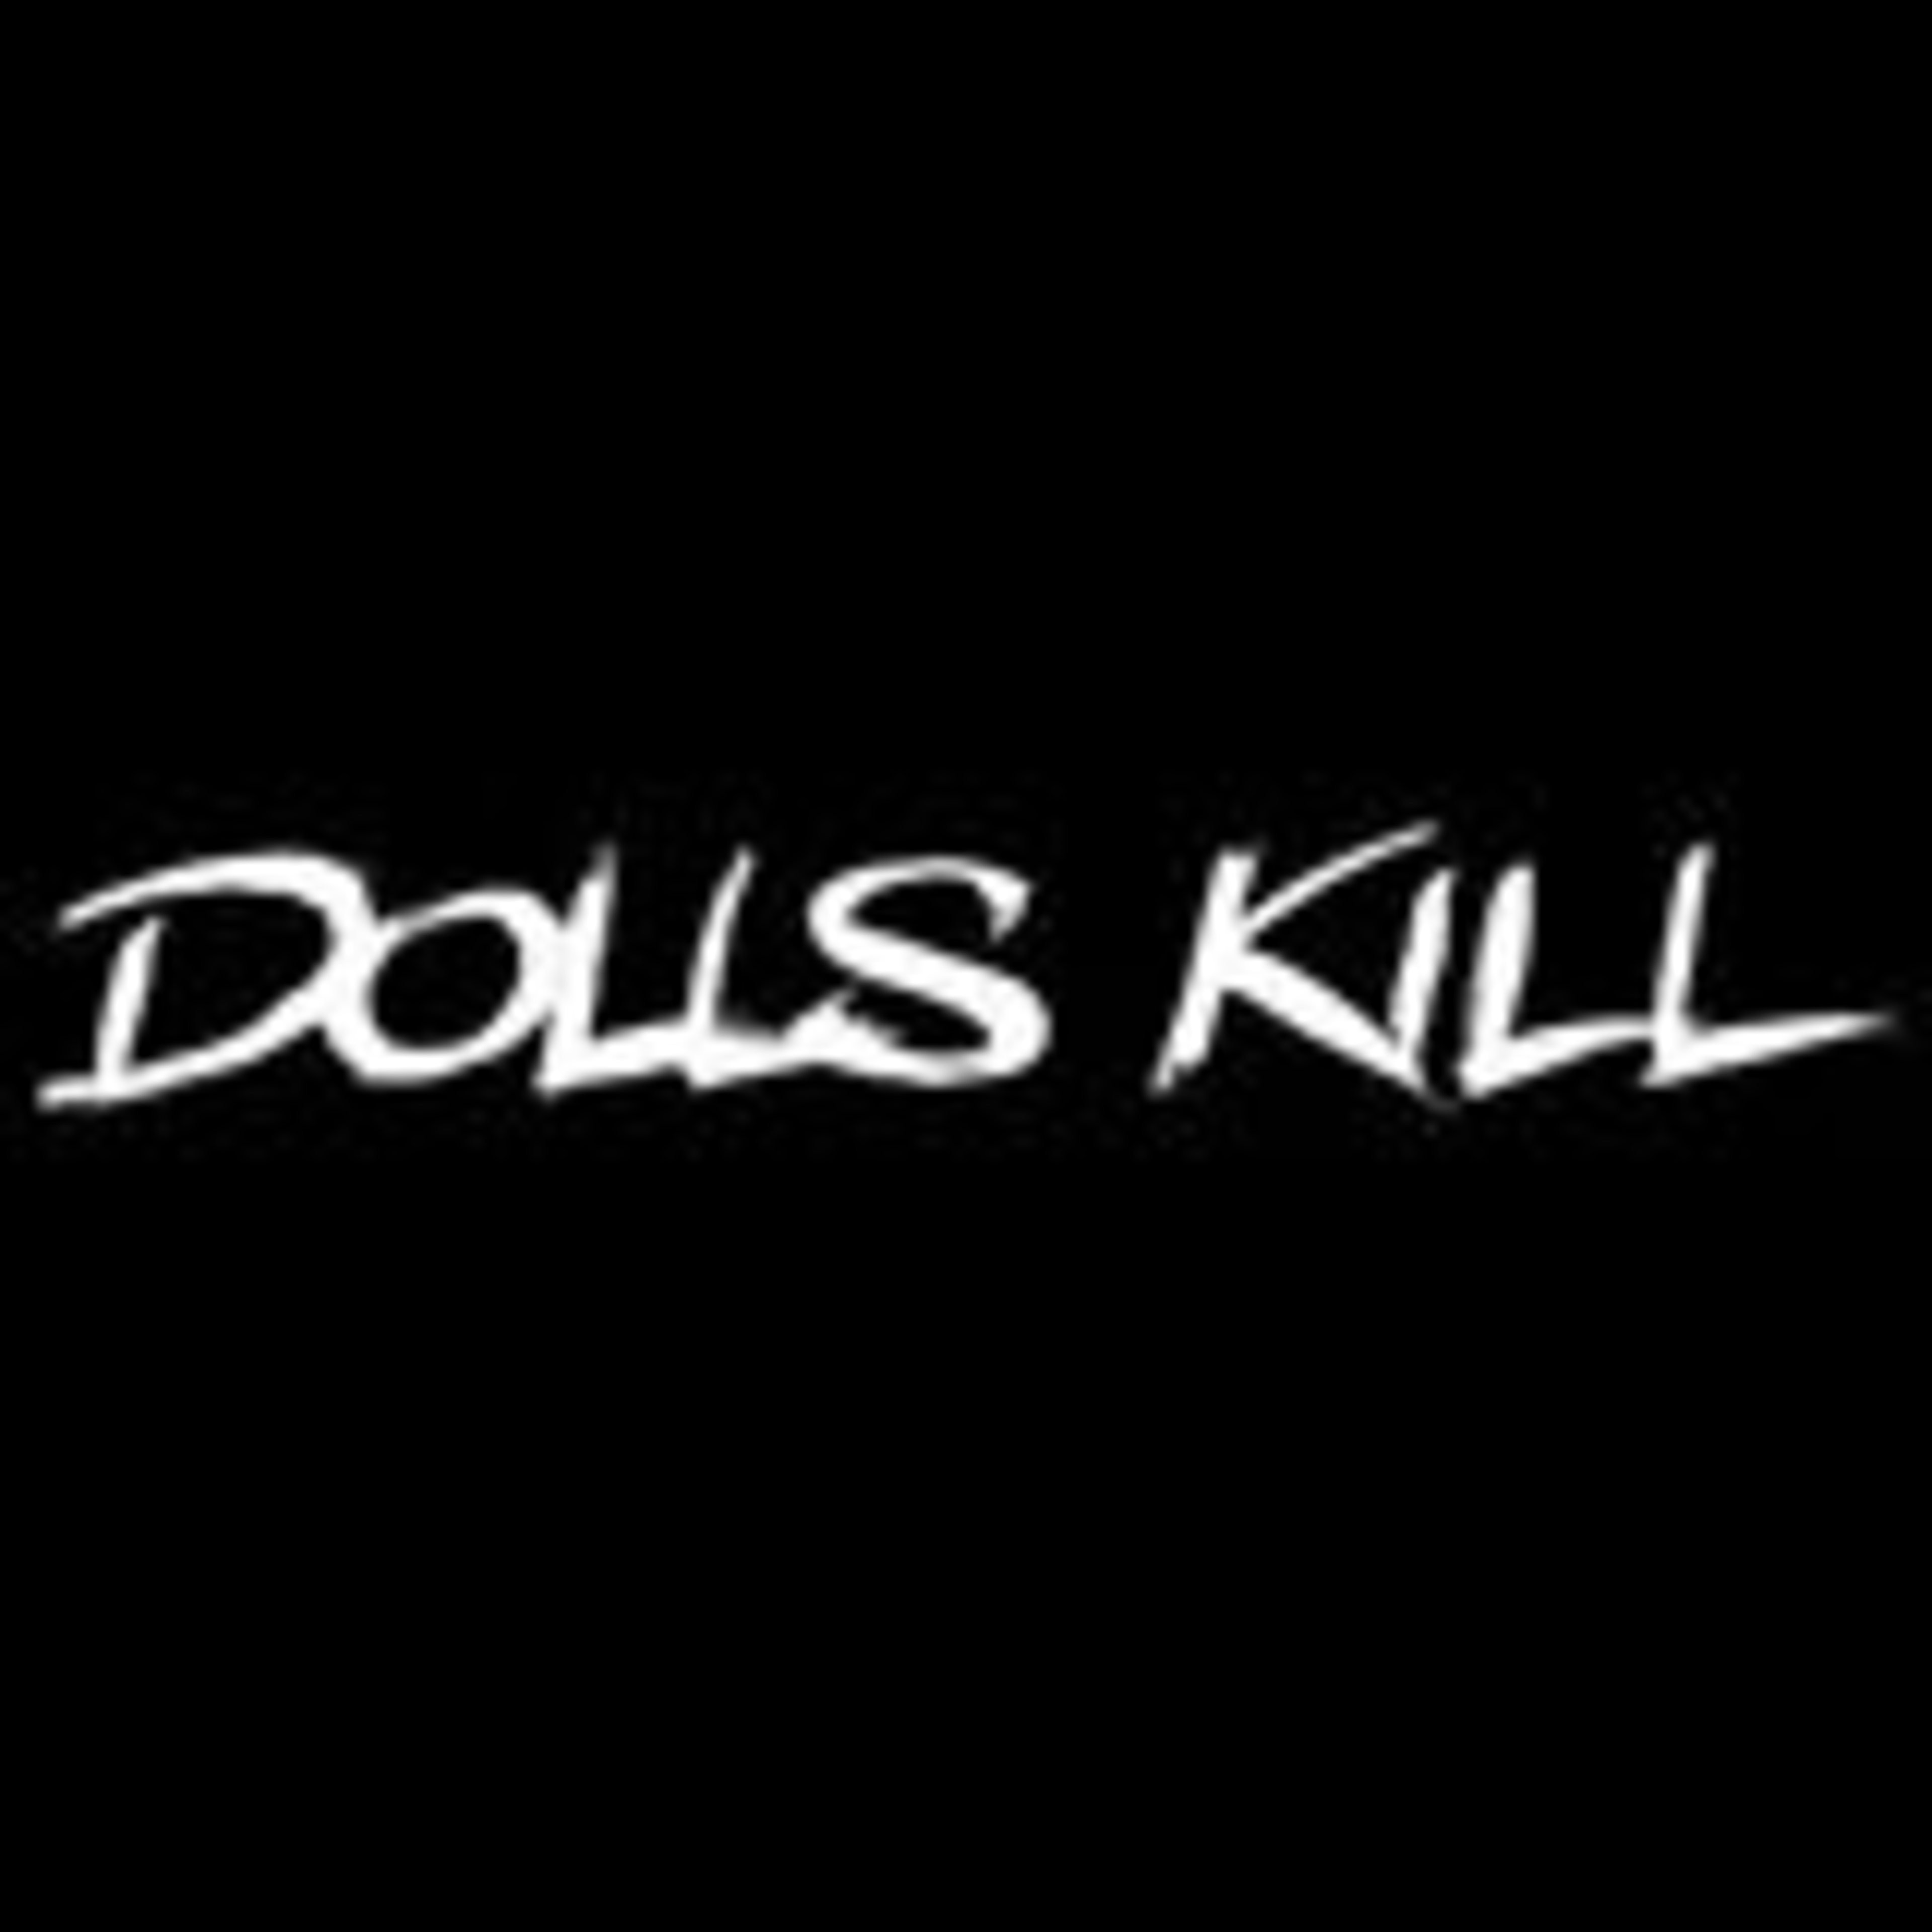 Dolls KillCode